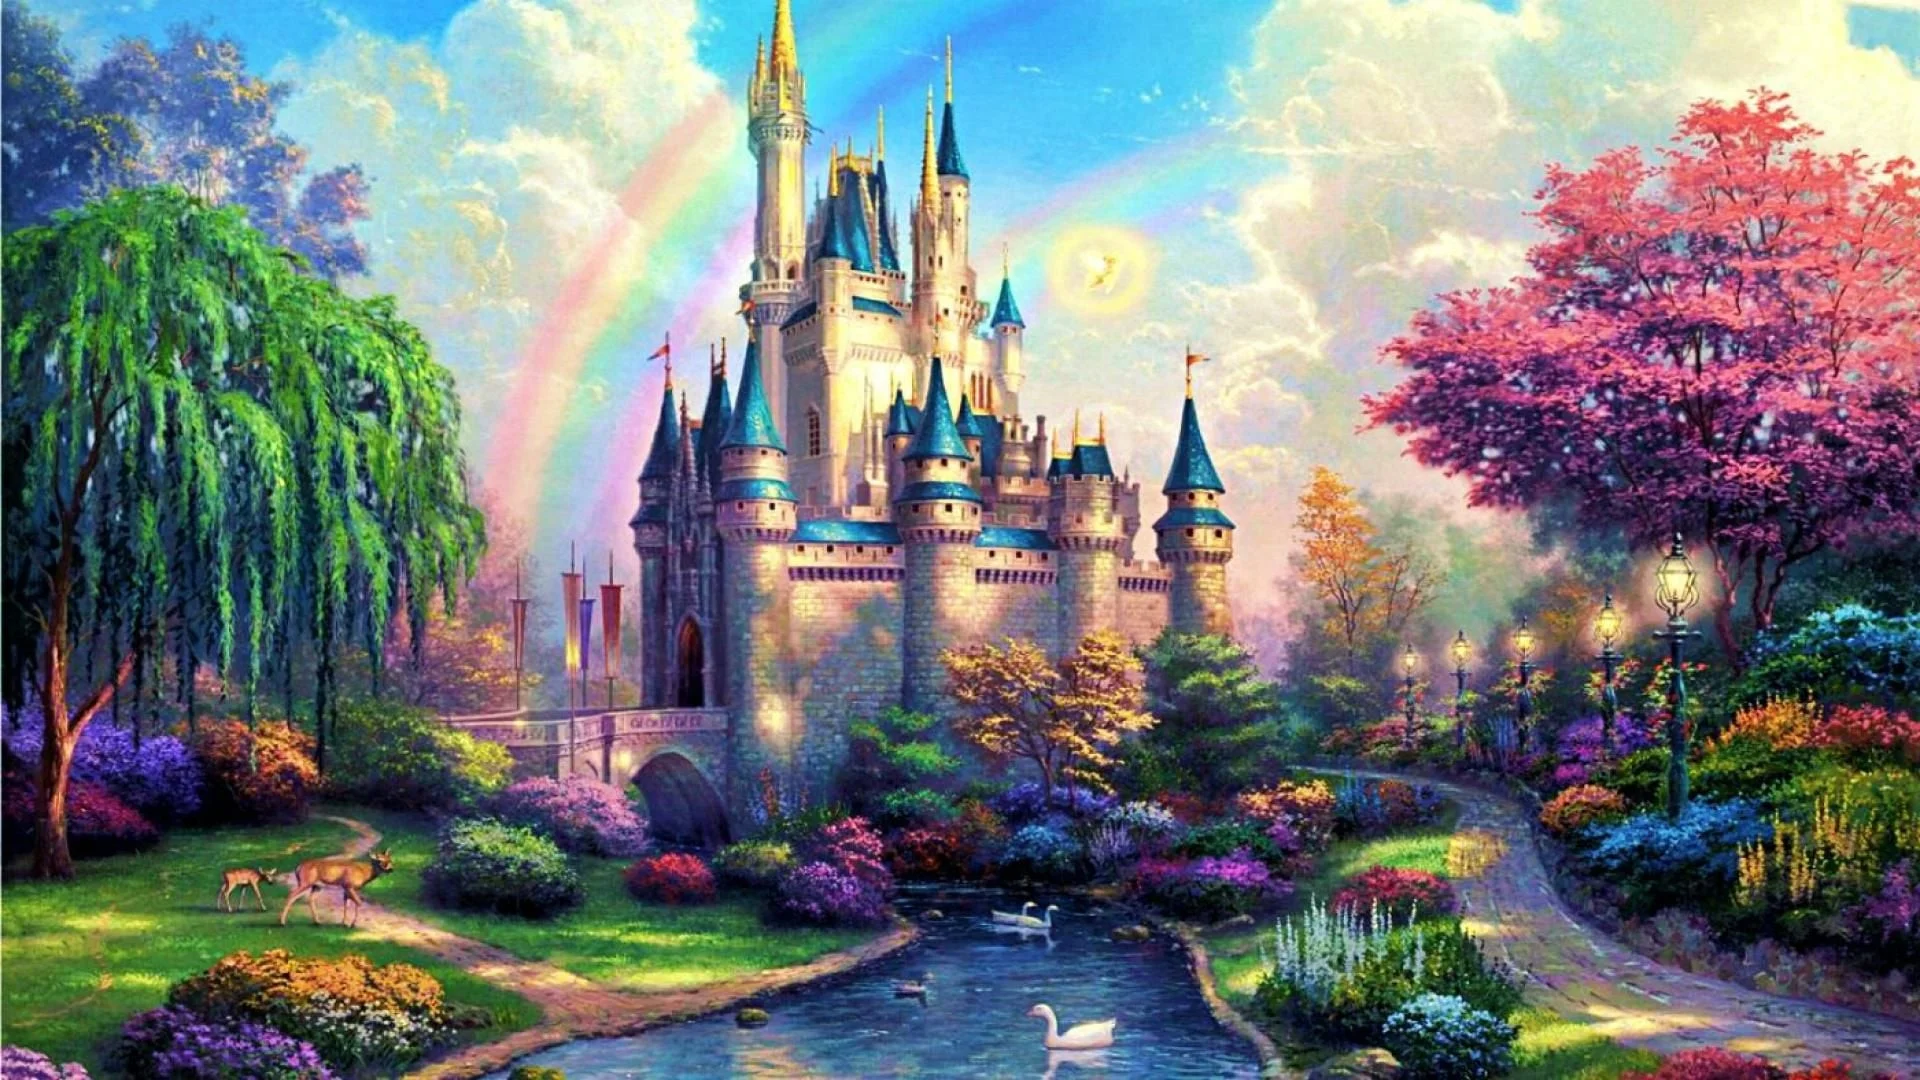 Nền desktop lâu đài Disney chắc chắn sẽ khiến bạn cảm thấy thích thú với những ngọn pháo hoa lung linh và mái vòm hoành tráng của lâu đài. Tải về ngay để trang trí desktop của mình với hình ảnh đẹp như trong cổ tích.